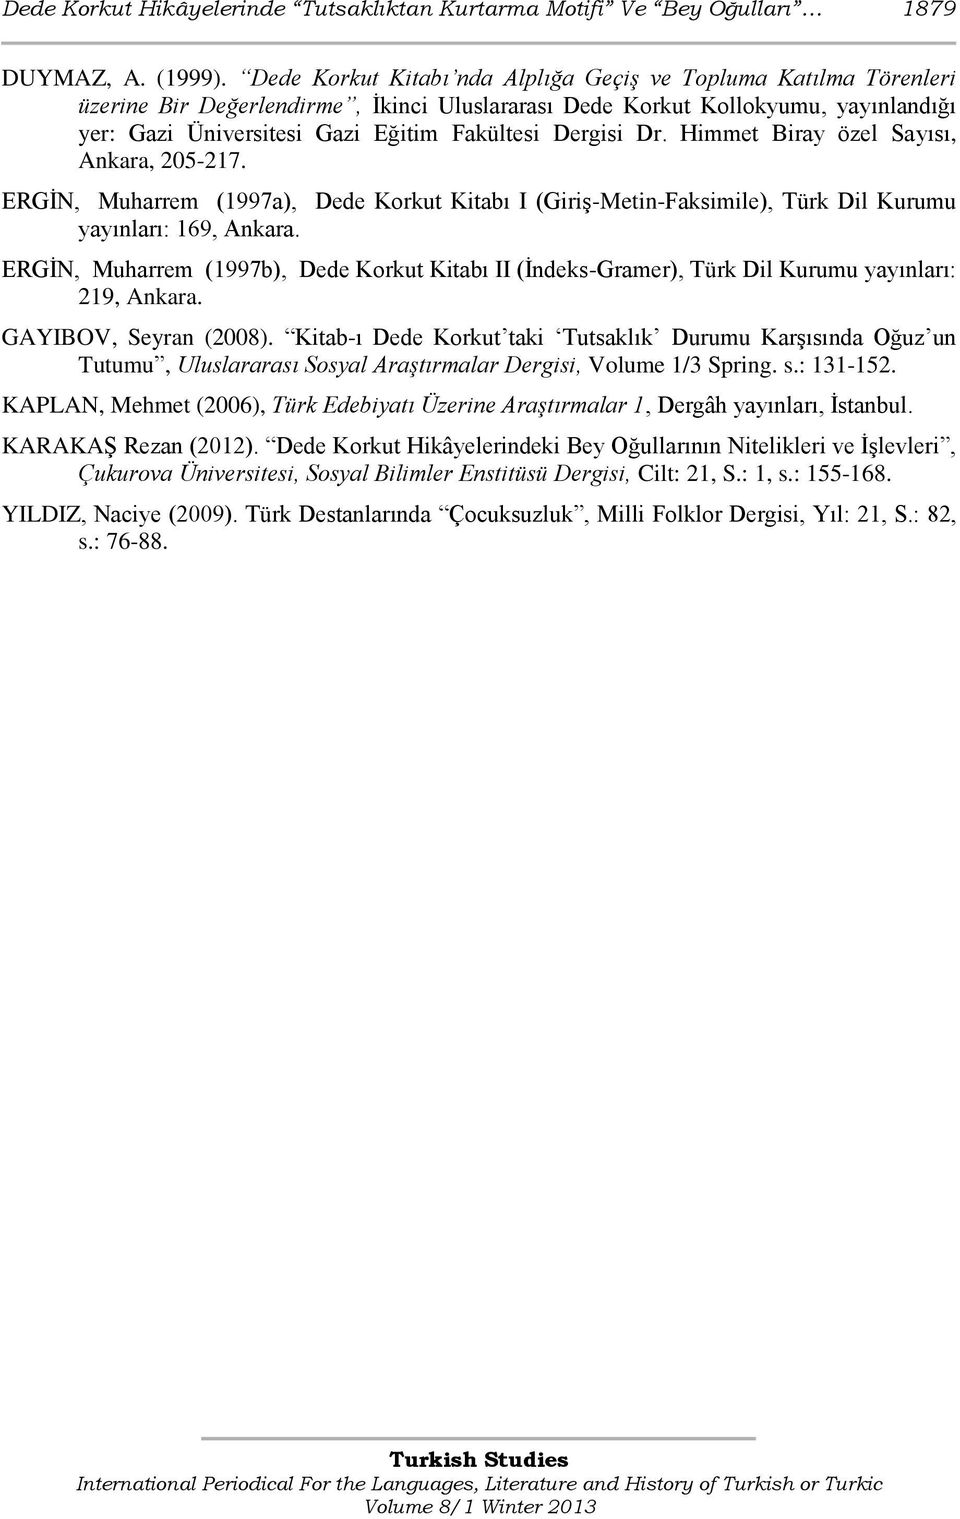 Dergisi Dr. Himmet Biray özel Sayısı, Ankara, 205-217. ERGİN, Muharrem (1997a), Dede Korkut Kitabı I (Giriş-Metin-Faksimile), Türk Dil Kurumu yayınları: 169, Ankara.